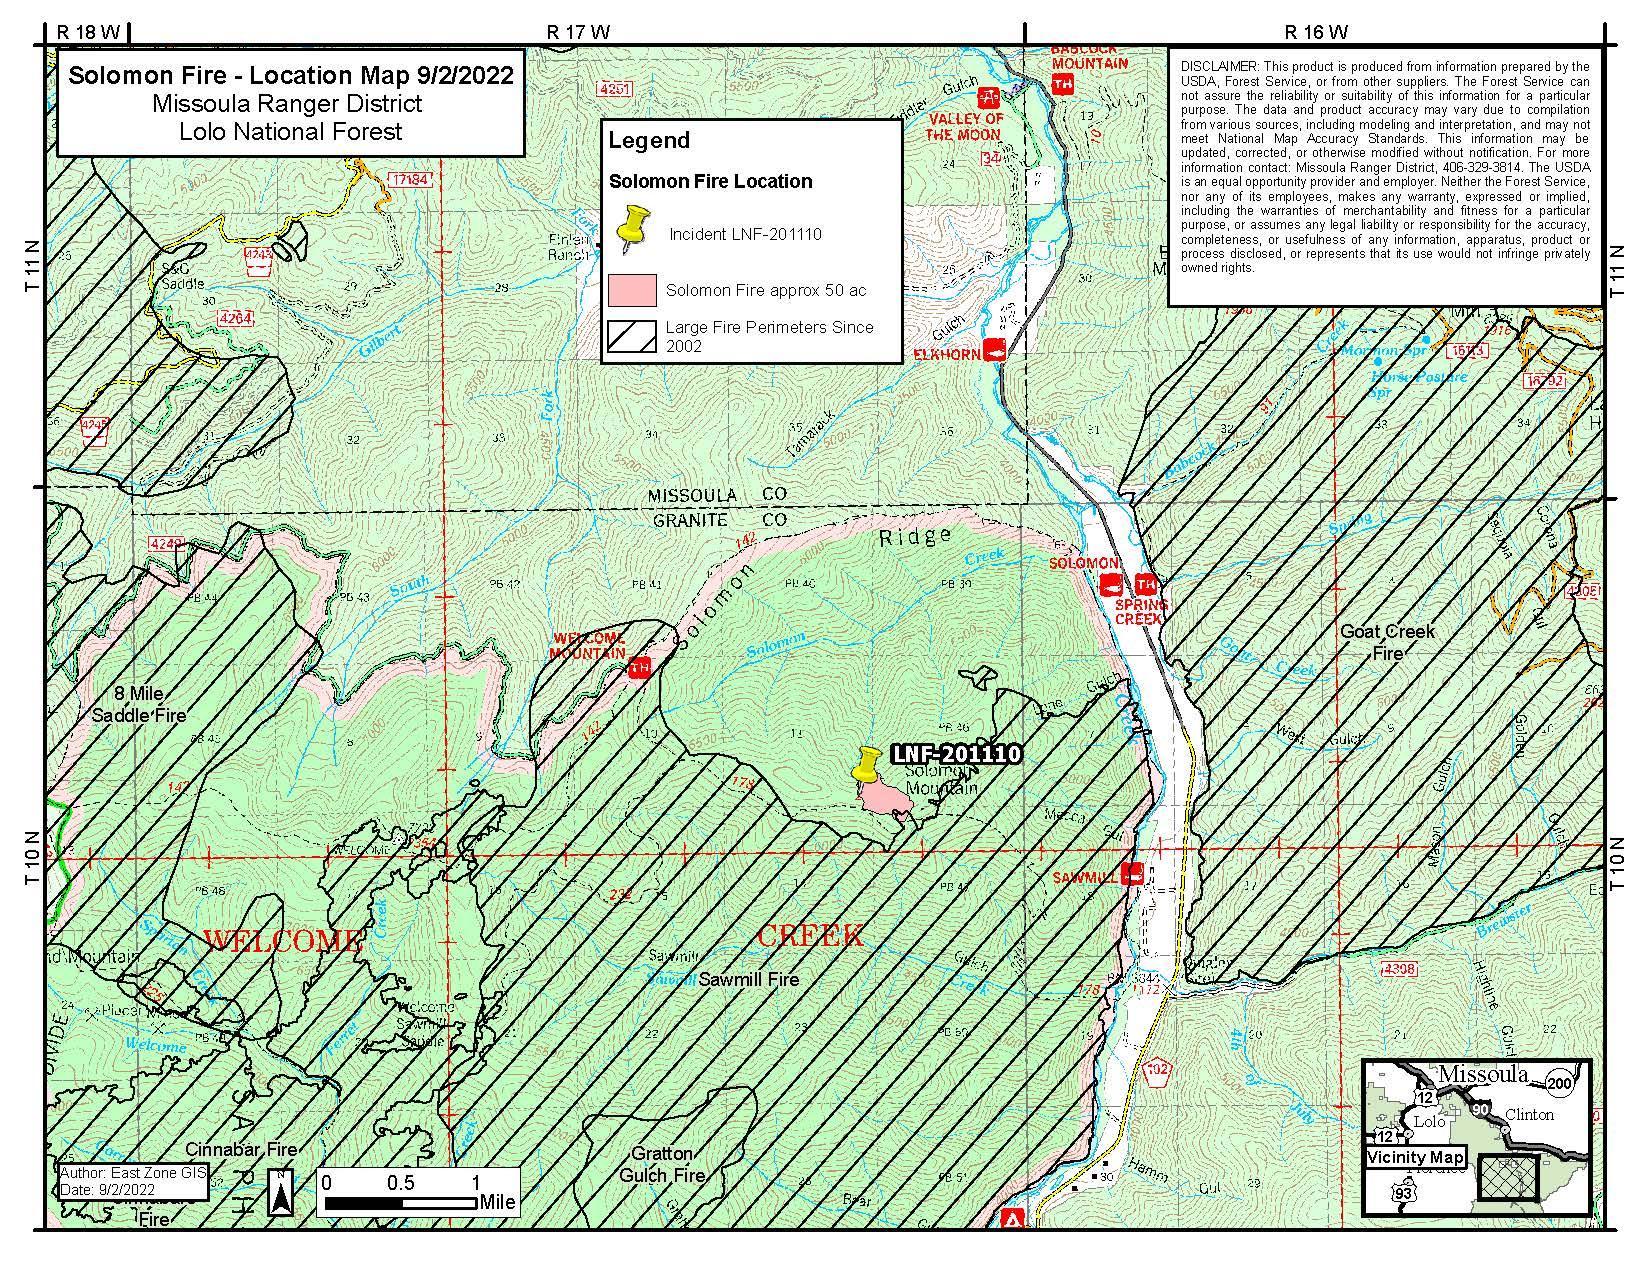 Solomon Fire Trail Closure Map (9/3/22)